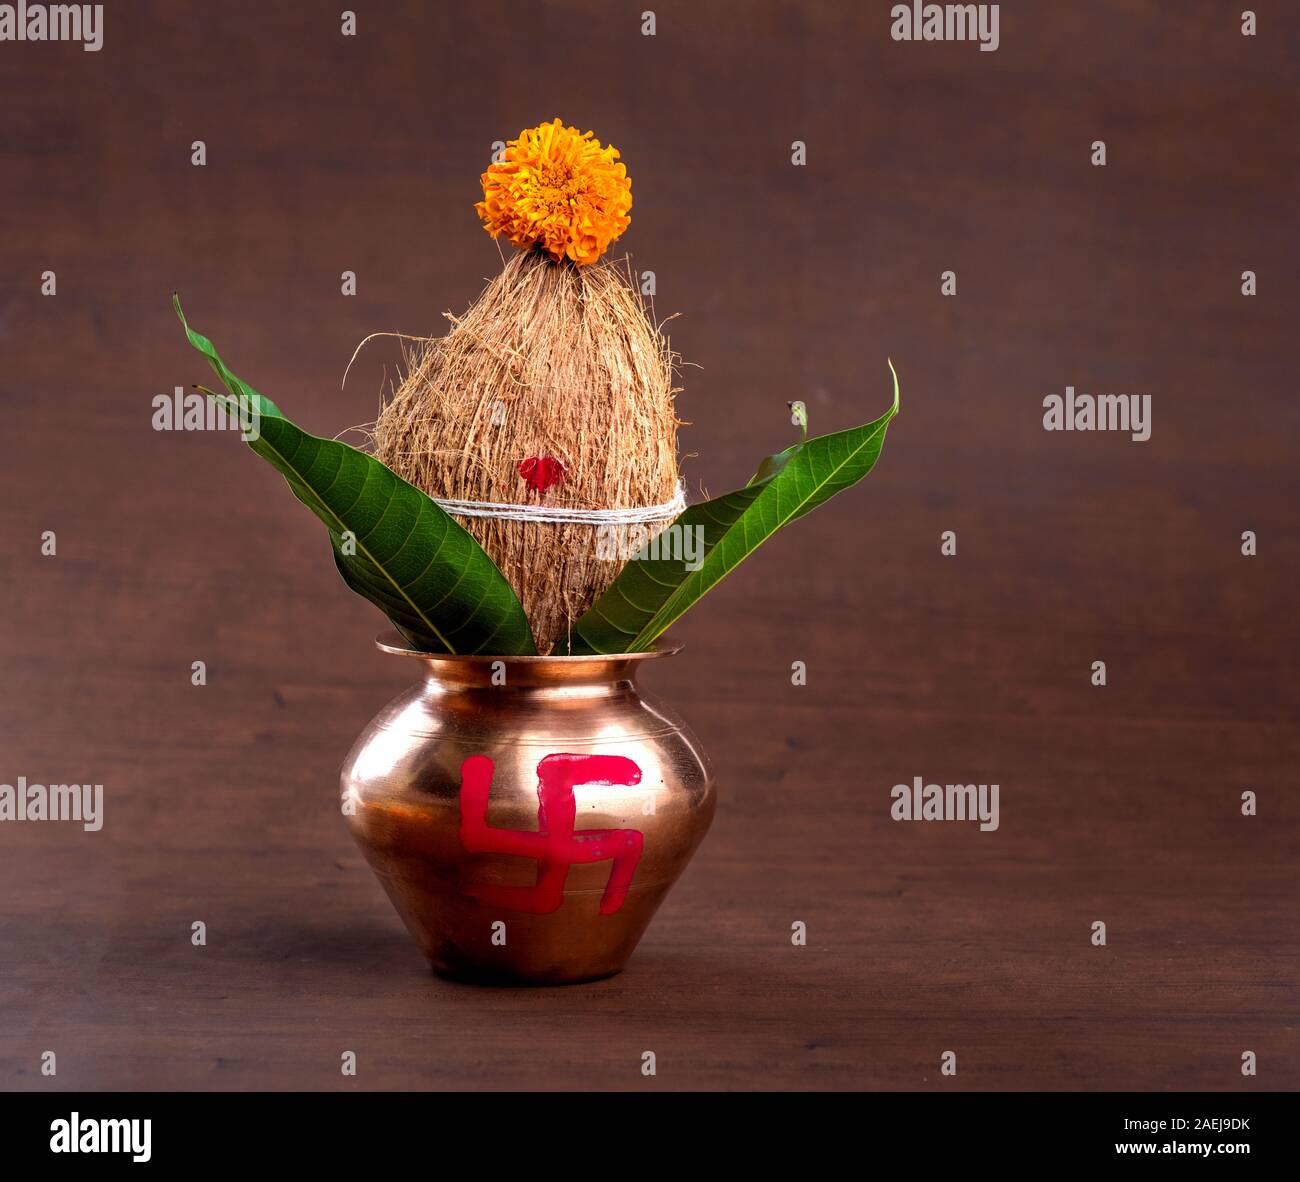 Hãy khám phá những chiếc đồng hũ dừa được trang trí với hoa văn lá xoài tinh tế, mang đến một vẻ đẹp đẳng cấp cho ngôi nhà của bạn. Hình ảnh sẽ chứa đựng những góc nhìn đắt giá về các chi tiết trang trí tinh tế trên những chiếc đồng hũ dừa.